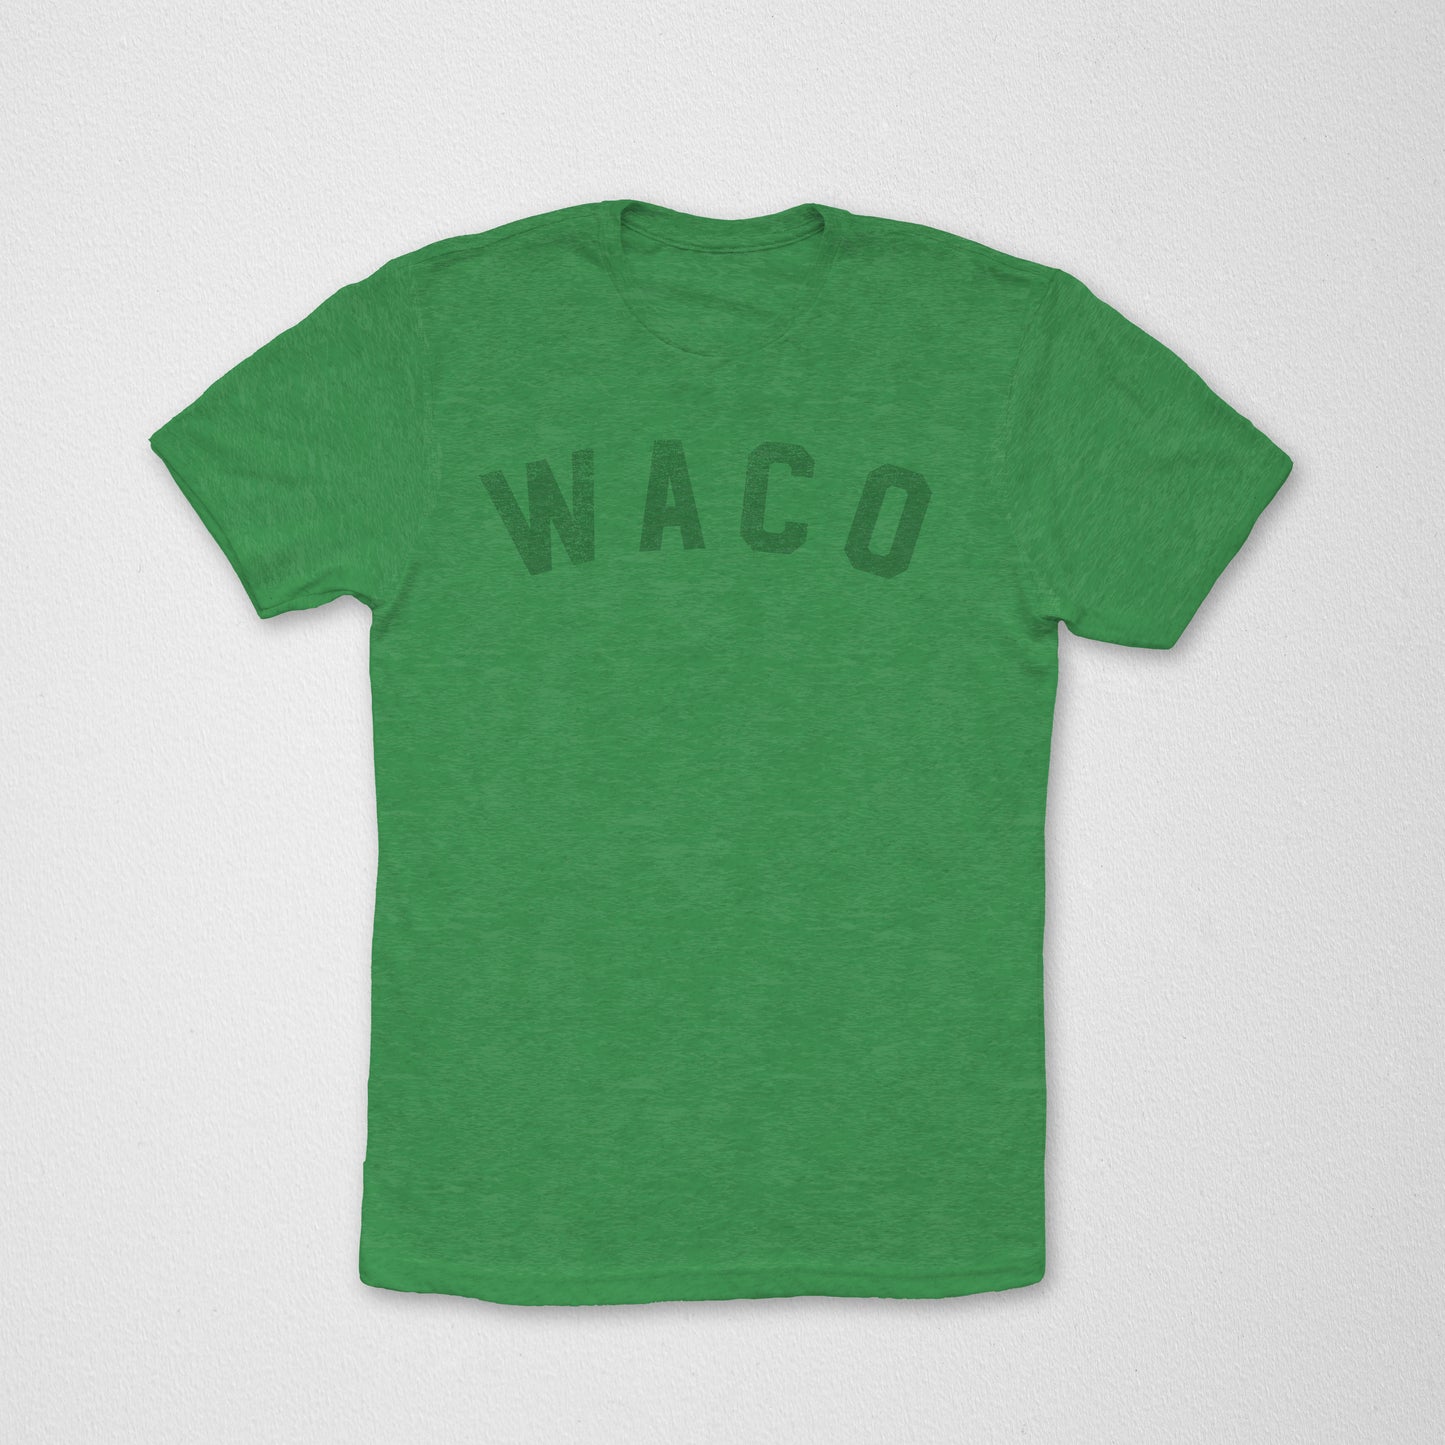 Waco Arch